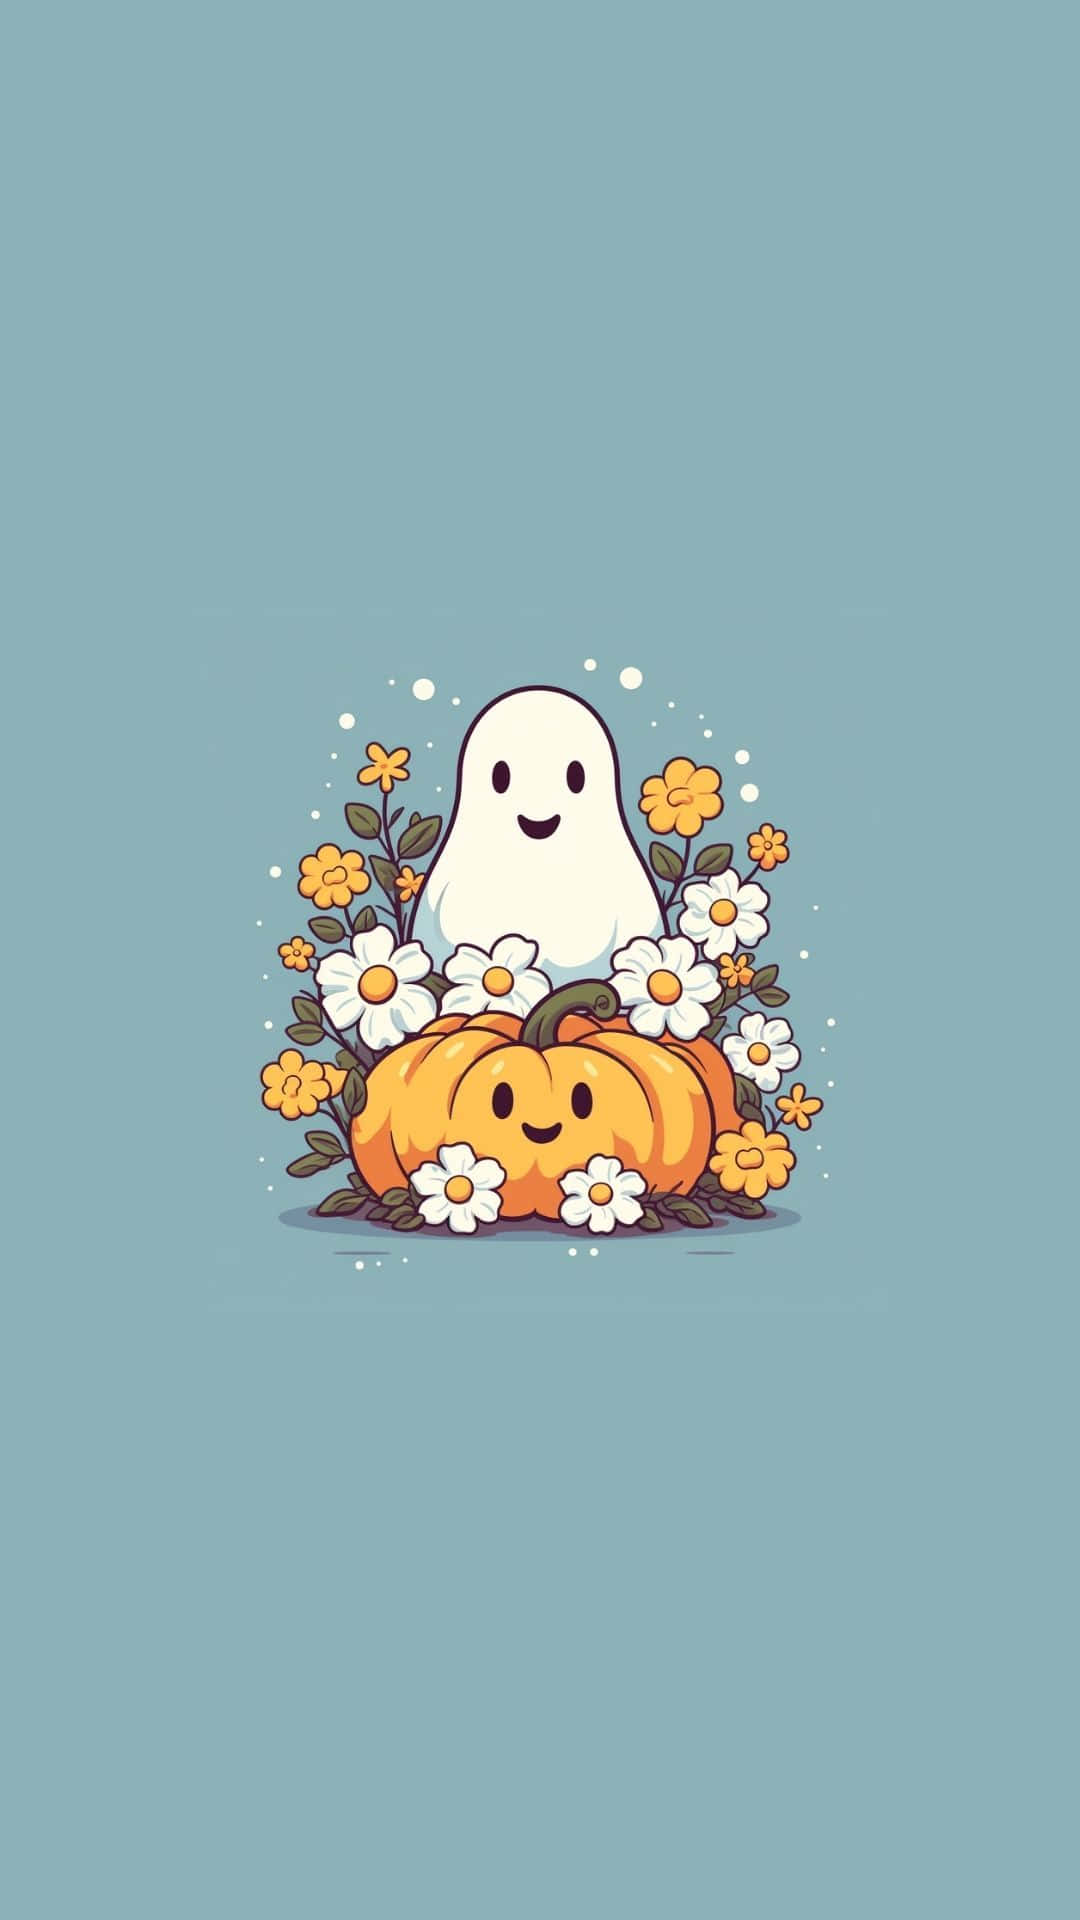 Cute Ghostand Pumpkin Illustration Wallpaper